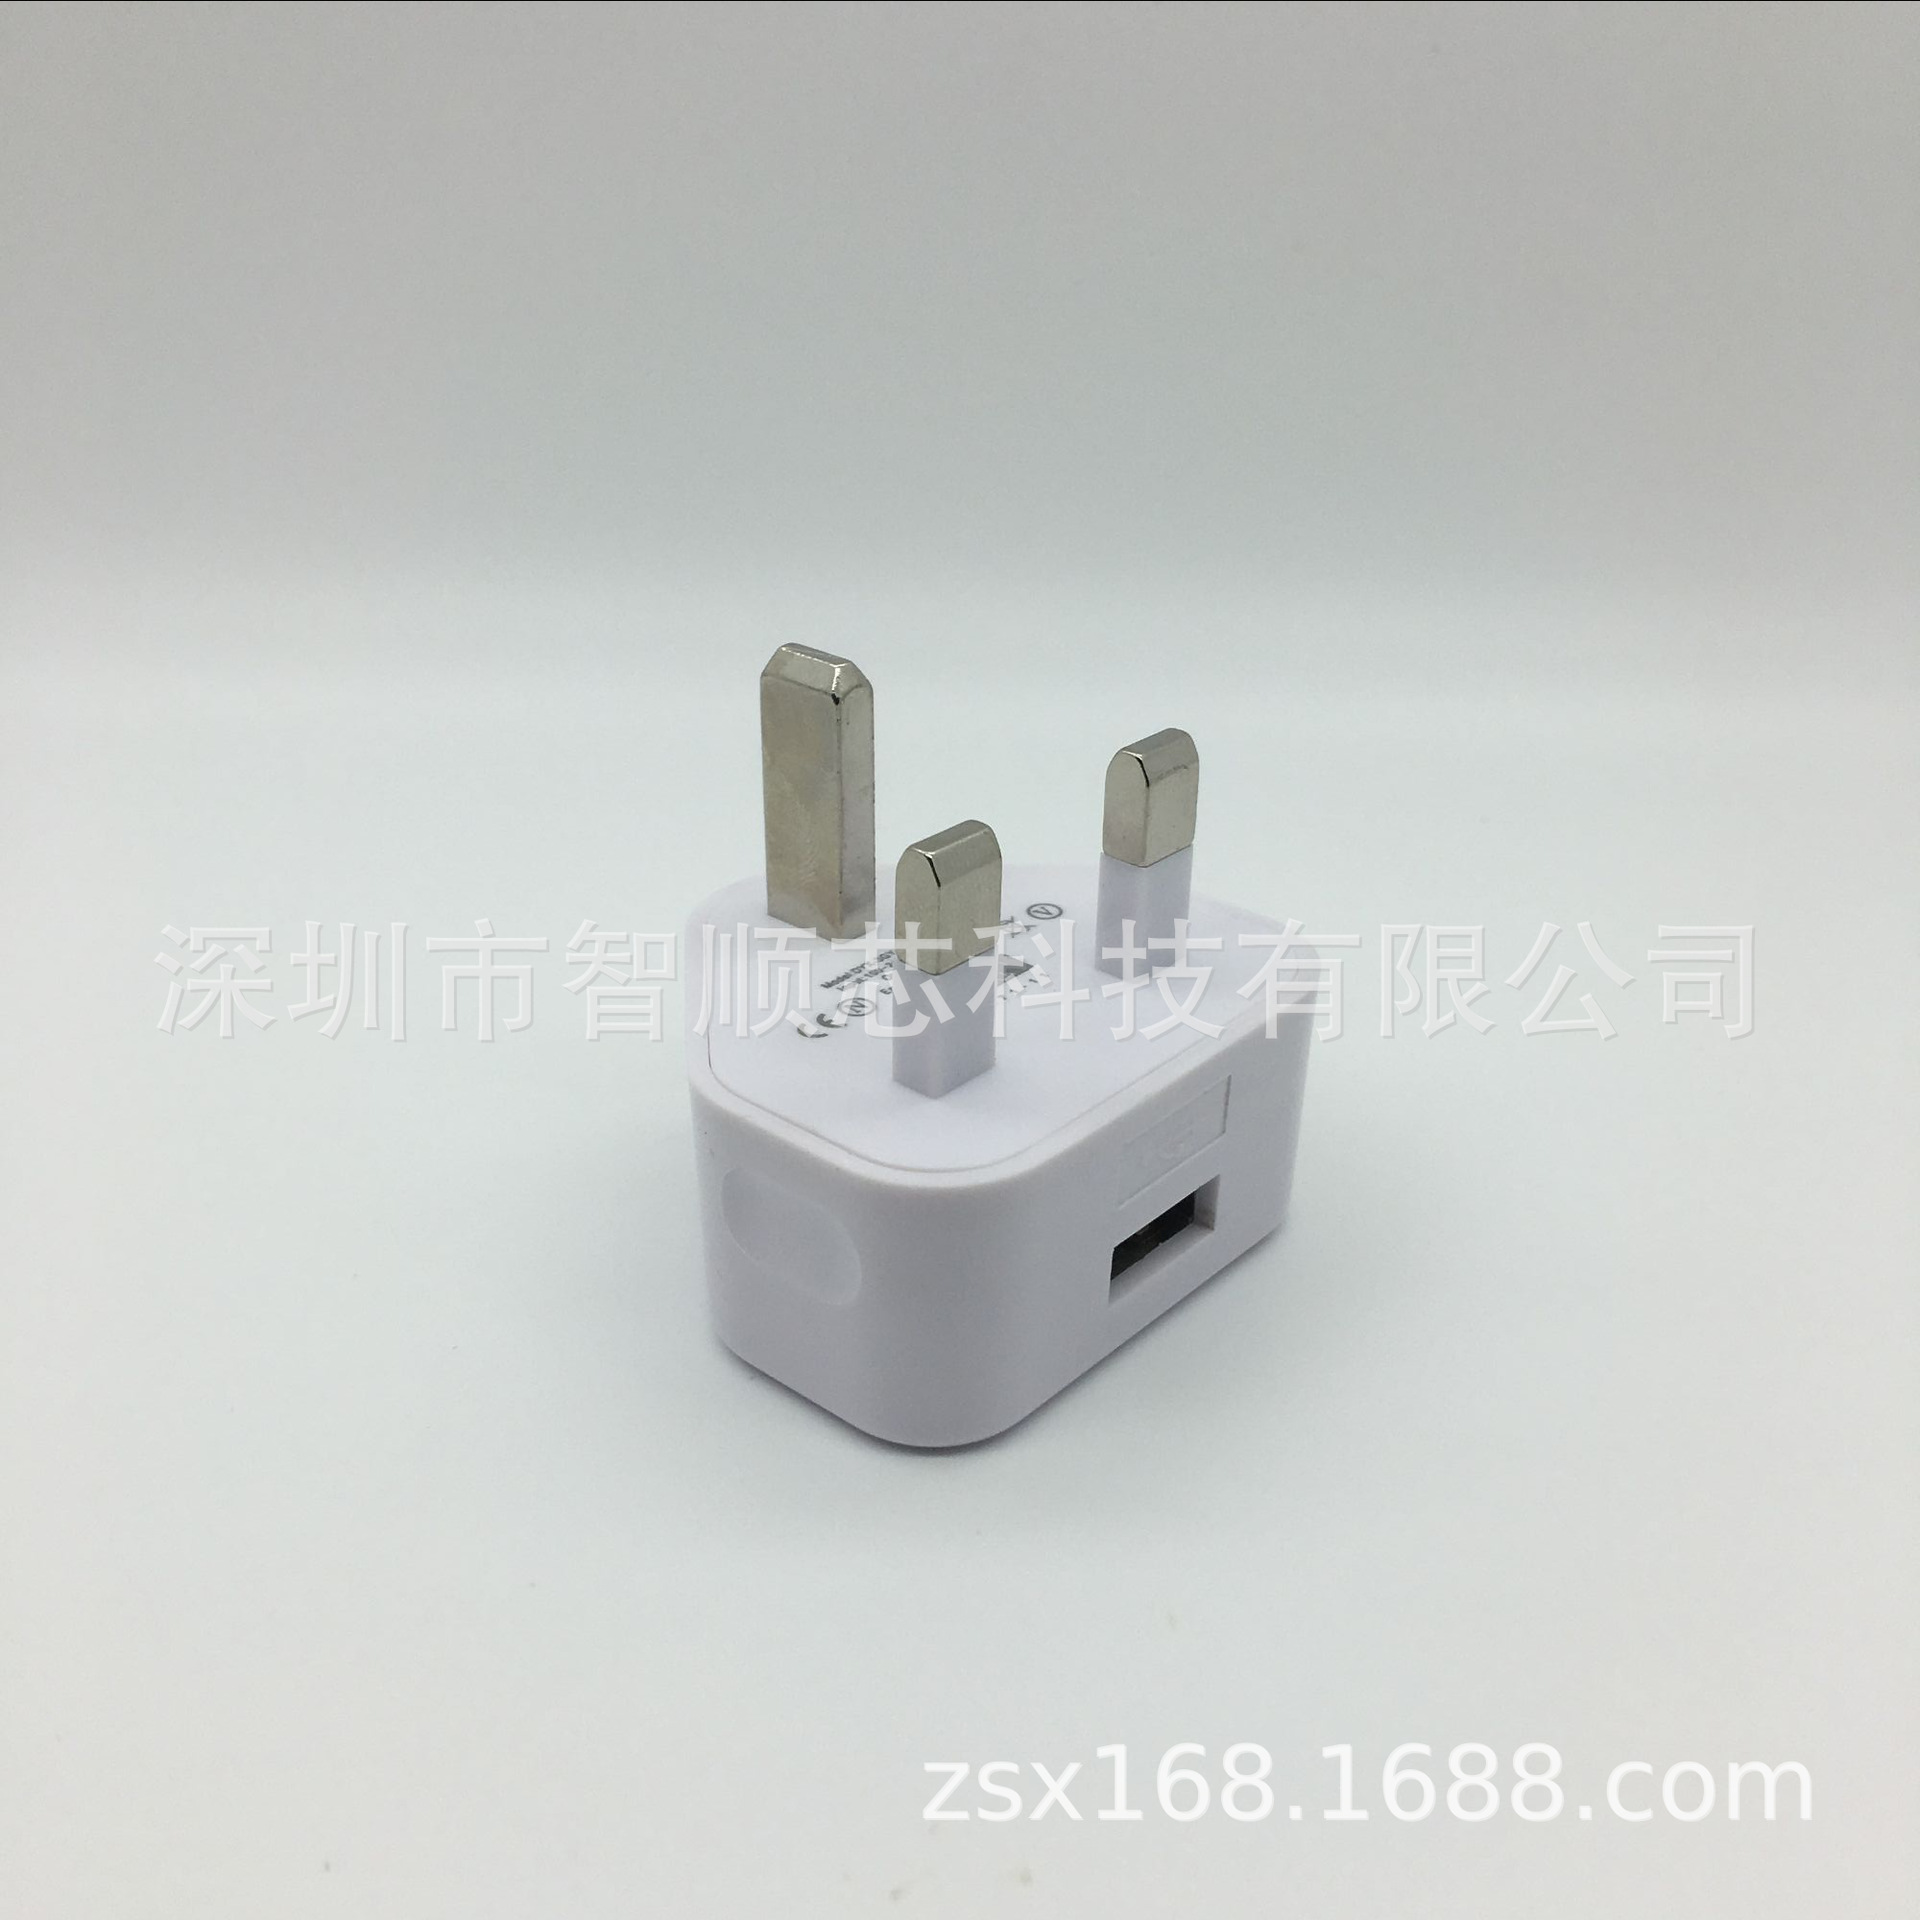 三角英规单USB充电器 5V2.1A手机平板通用智能充头 适用苹果 安卓